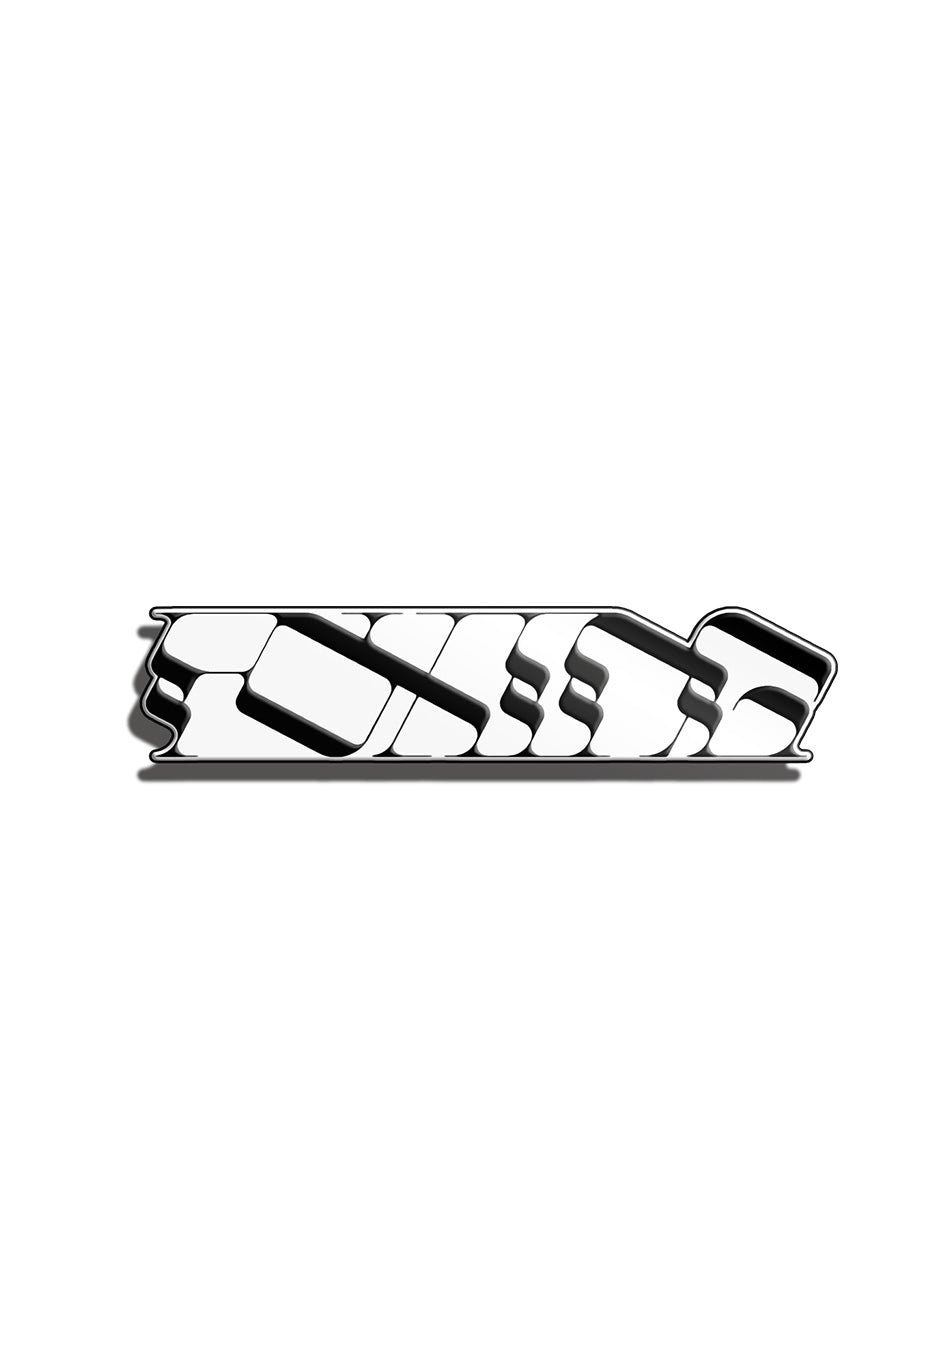 Foxing - Logo - Pin Set